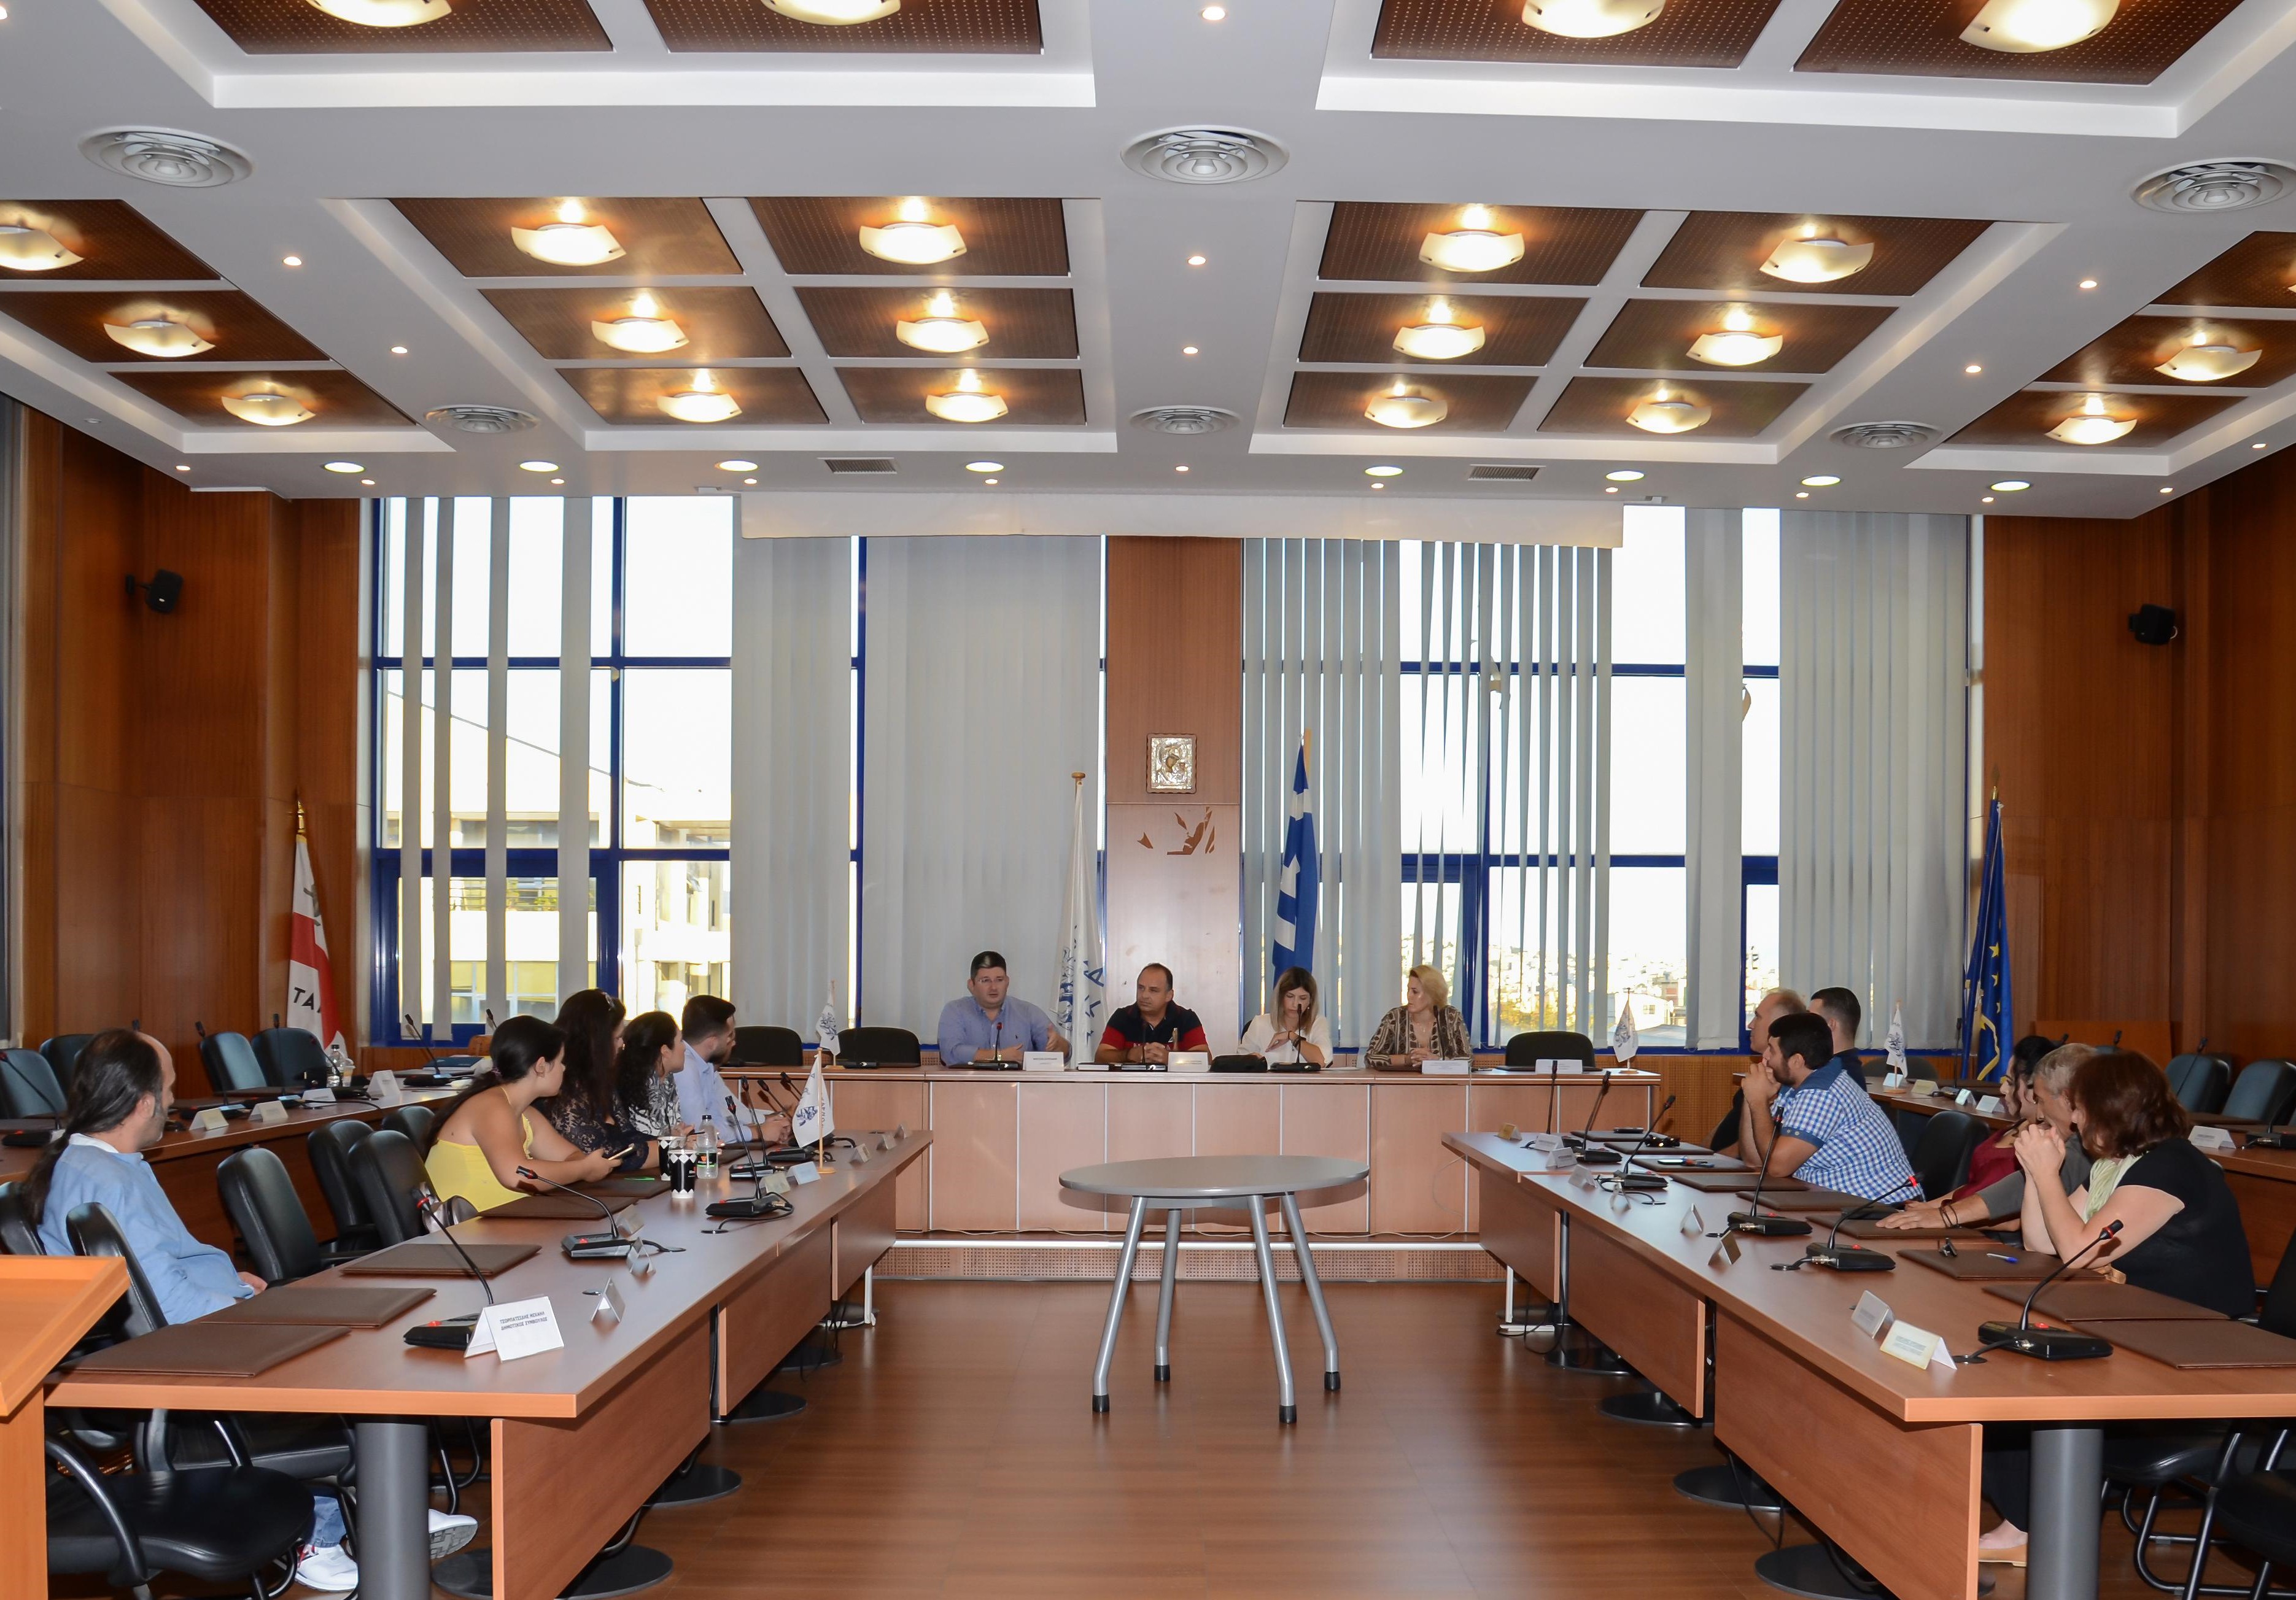 Η πρώτη συνεδρίαση των Συμβουλίων Κοινοτήτων Αχαρνών και Θρακομακεδόνων